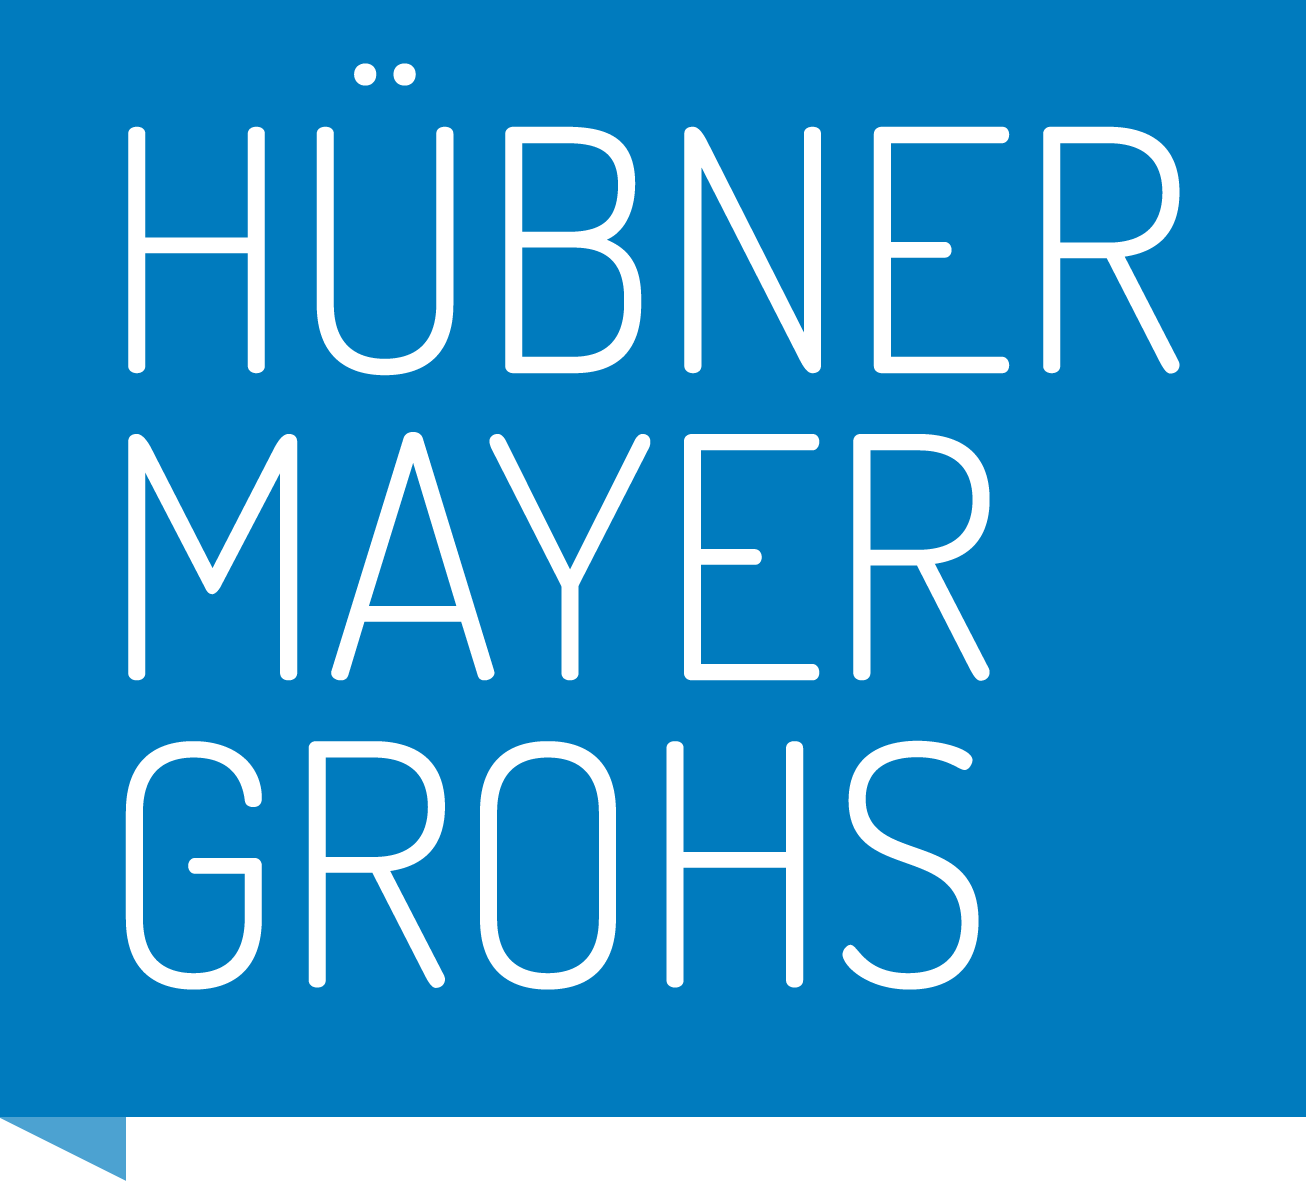 Hübner Mayer Grohs | Kanzlei für Recht, Wirtschaft & Steuern